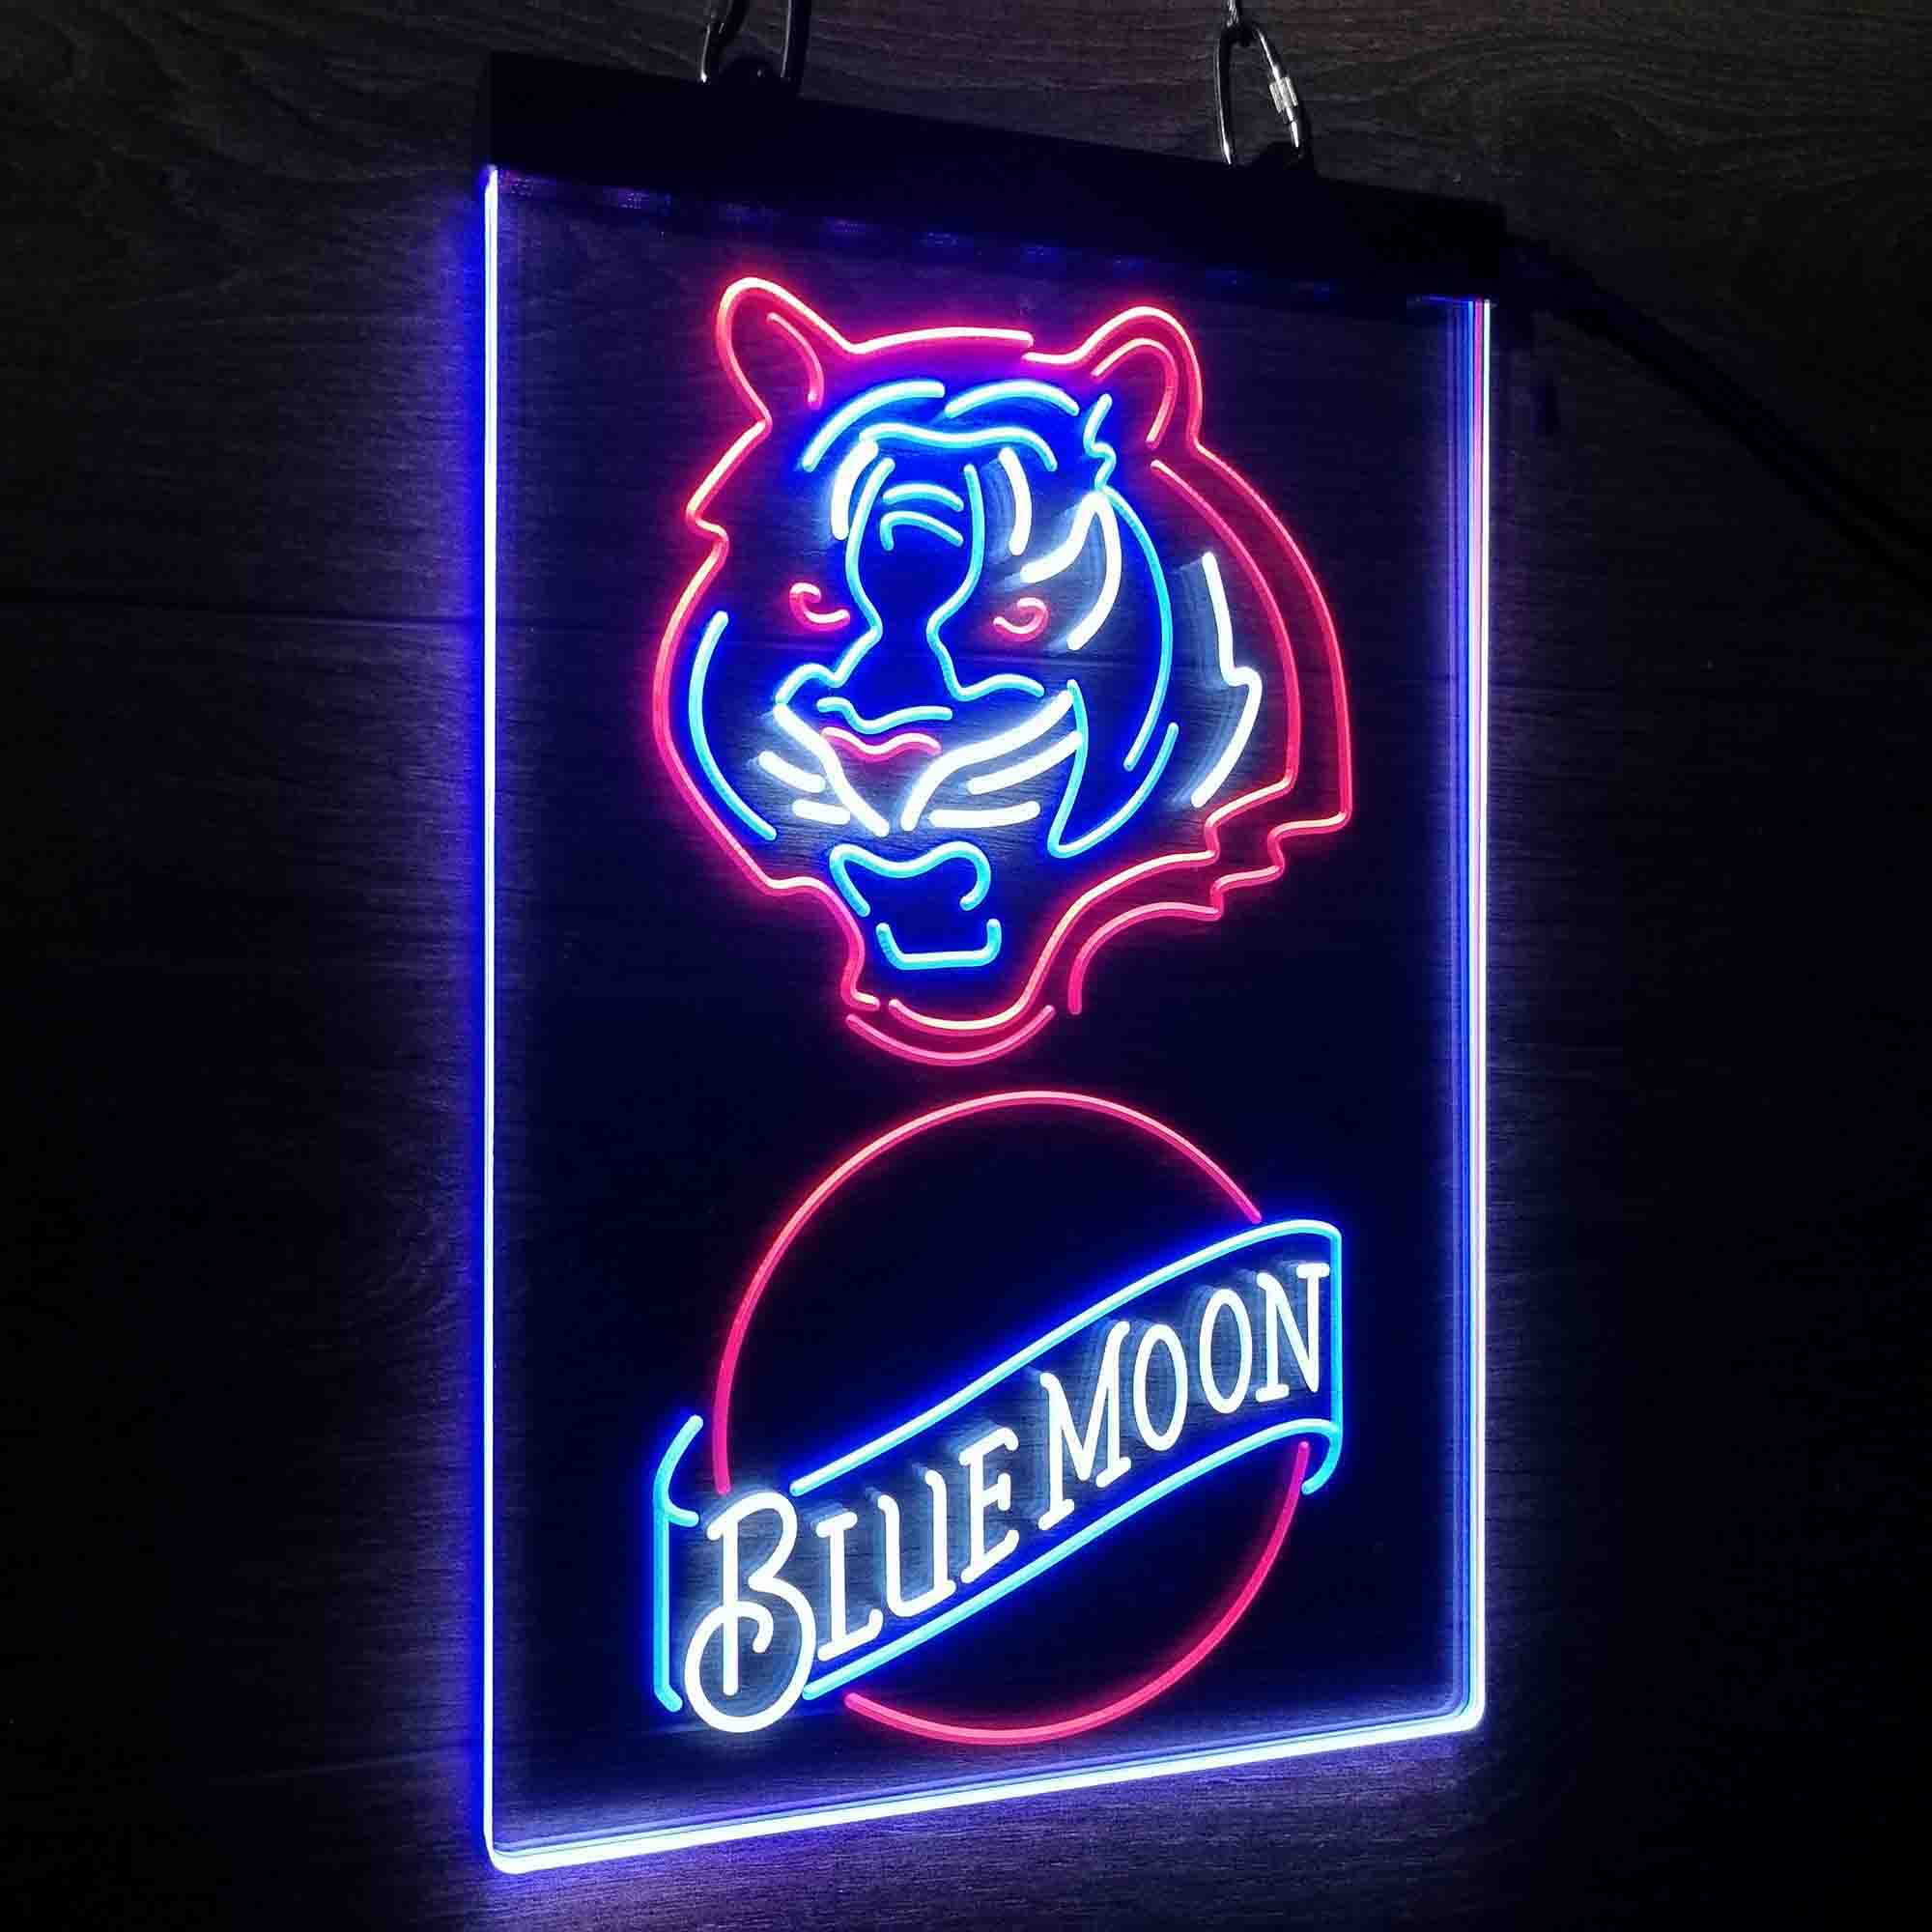 Blue Moon Bar Cincinnati Bengals Est. 1968 Neon LED Sign 3 Colors